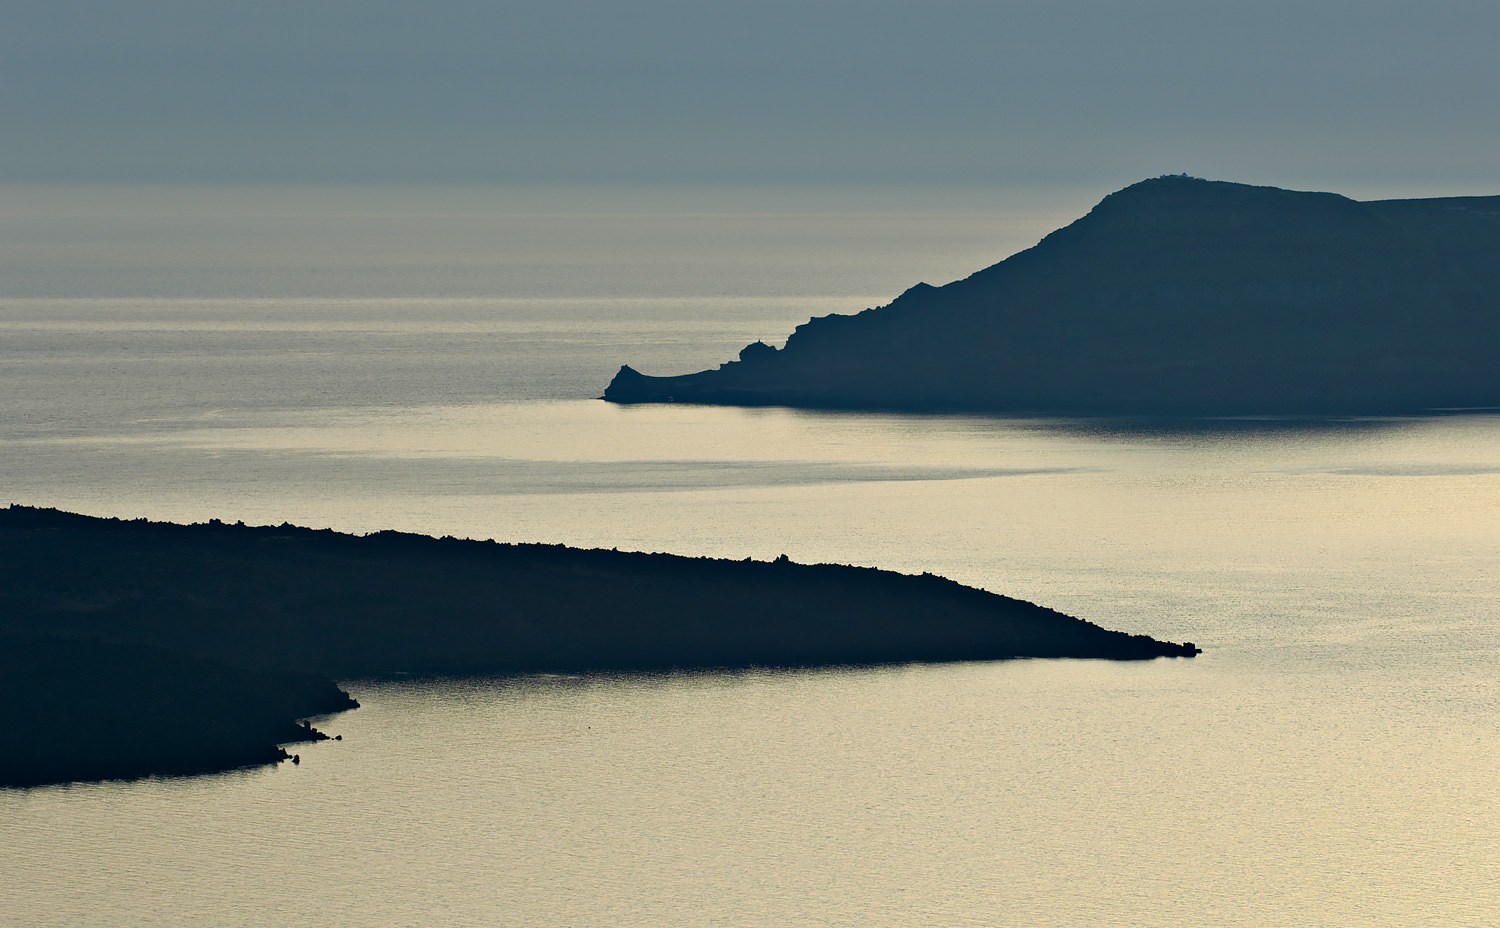  Santorini, Greece (2006) 